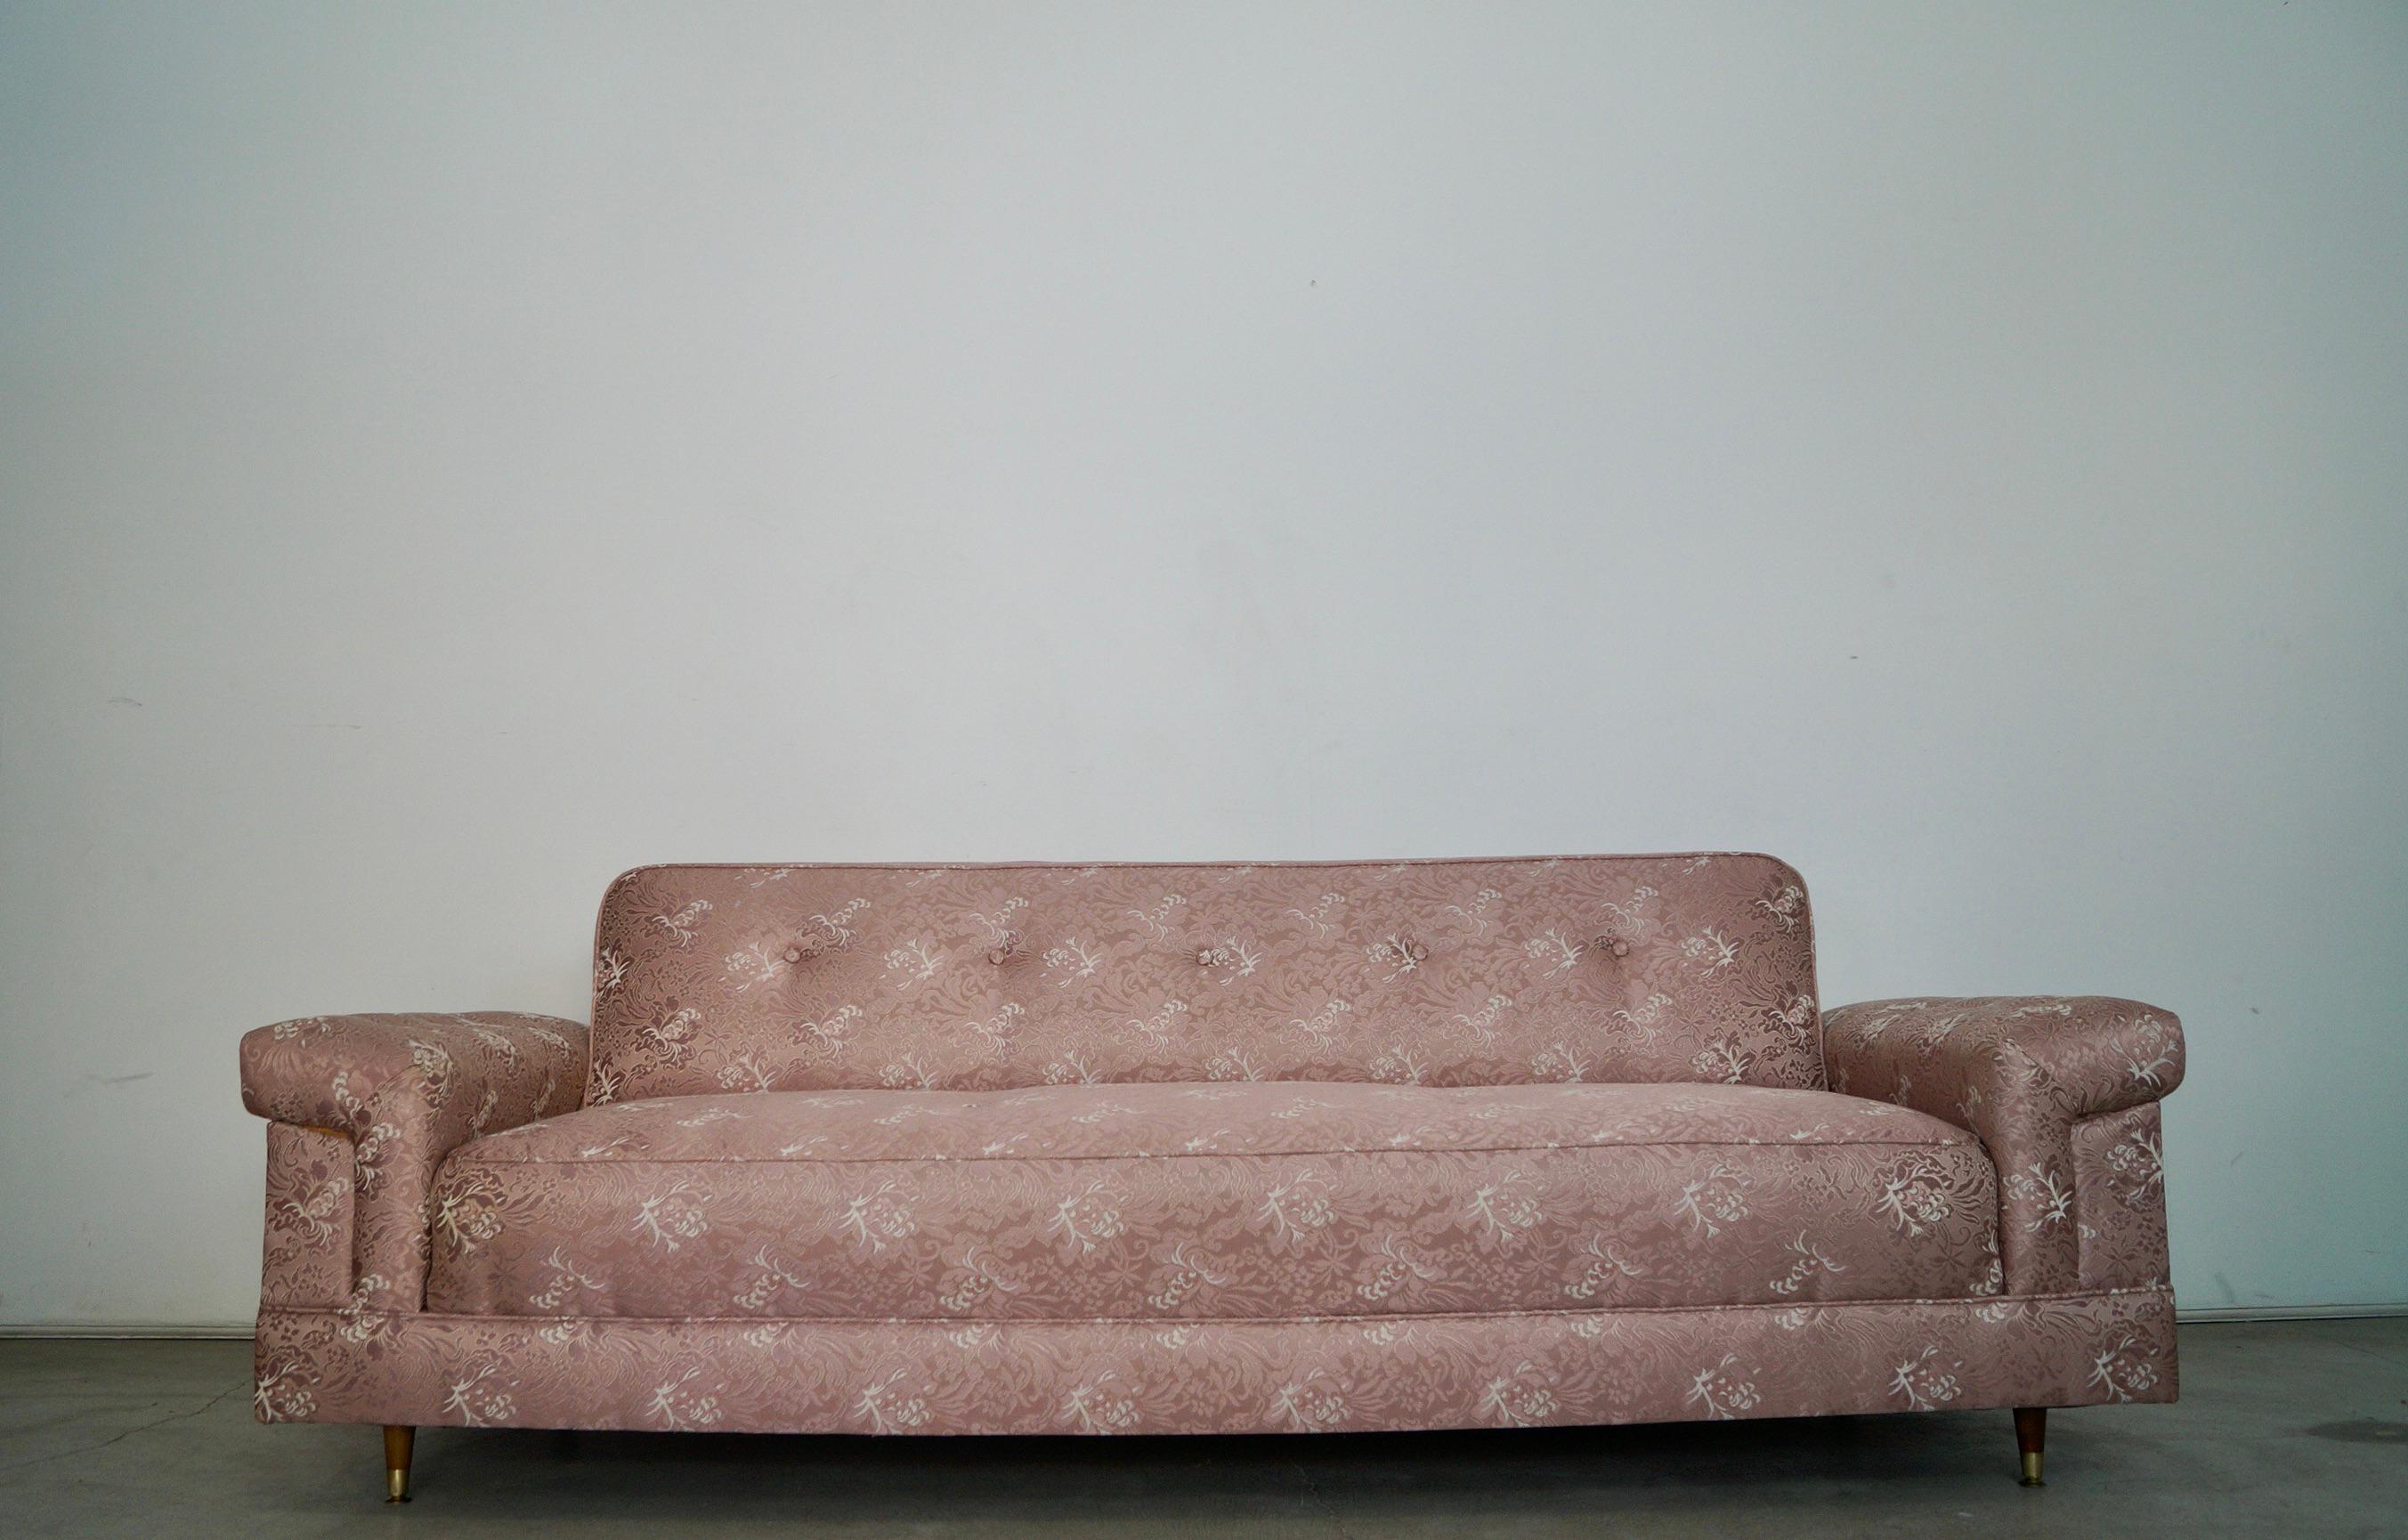 Canapé / lit pliant Vintage 1950's Midcentury Modern à vendre. Datant des années 1950, il a été professionnellement retapissé dans les années 1960. Les propriétaires l'ont recouvert d'une housse de canapé en plastique après toutes ces années, de